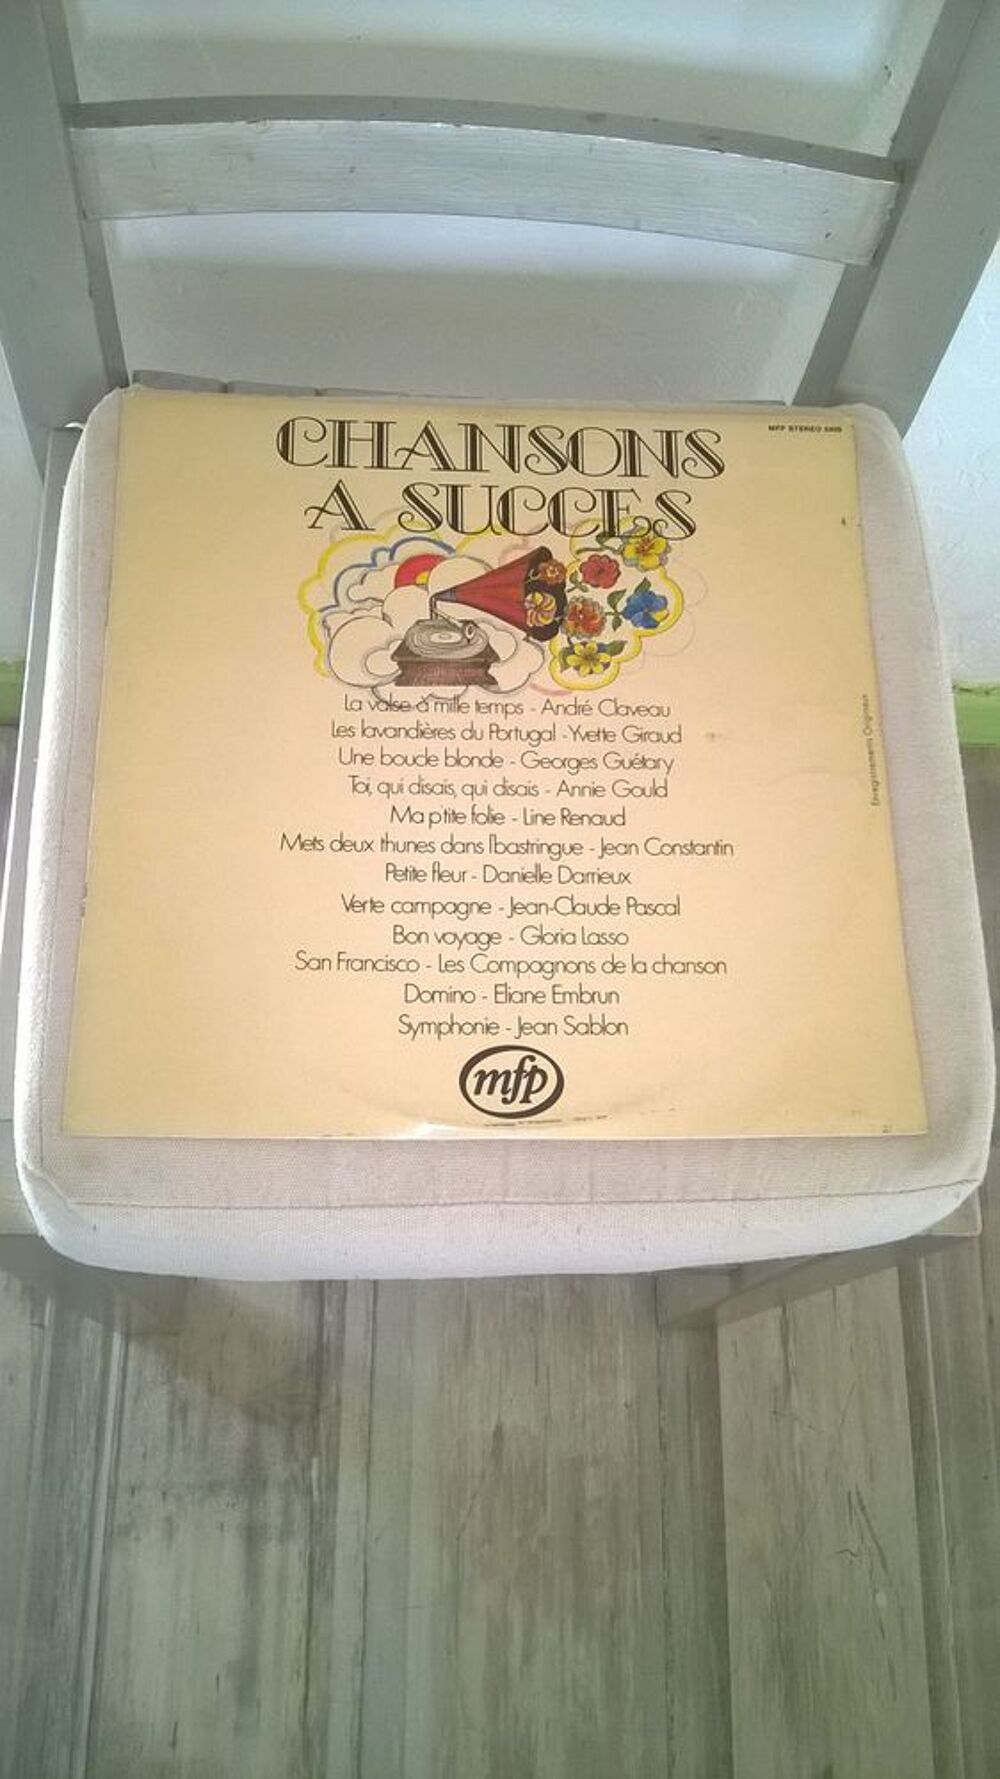 Vinyle Chansons A Succes
Excellent etat
Ma P'tite Folie-Li CD et vinyles